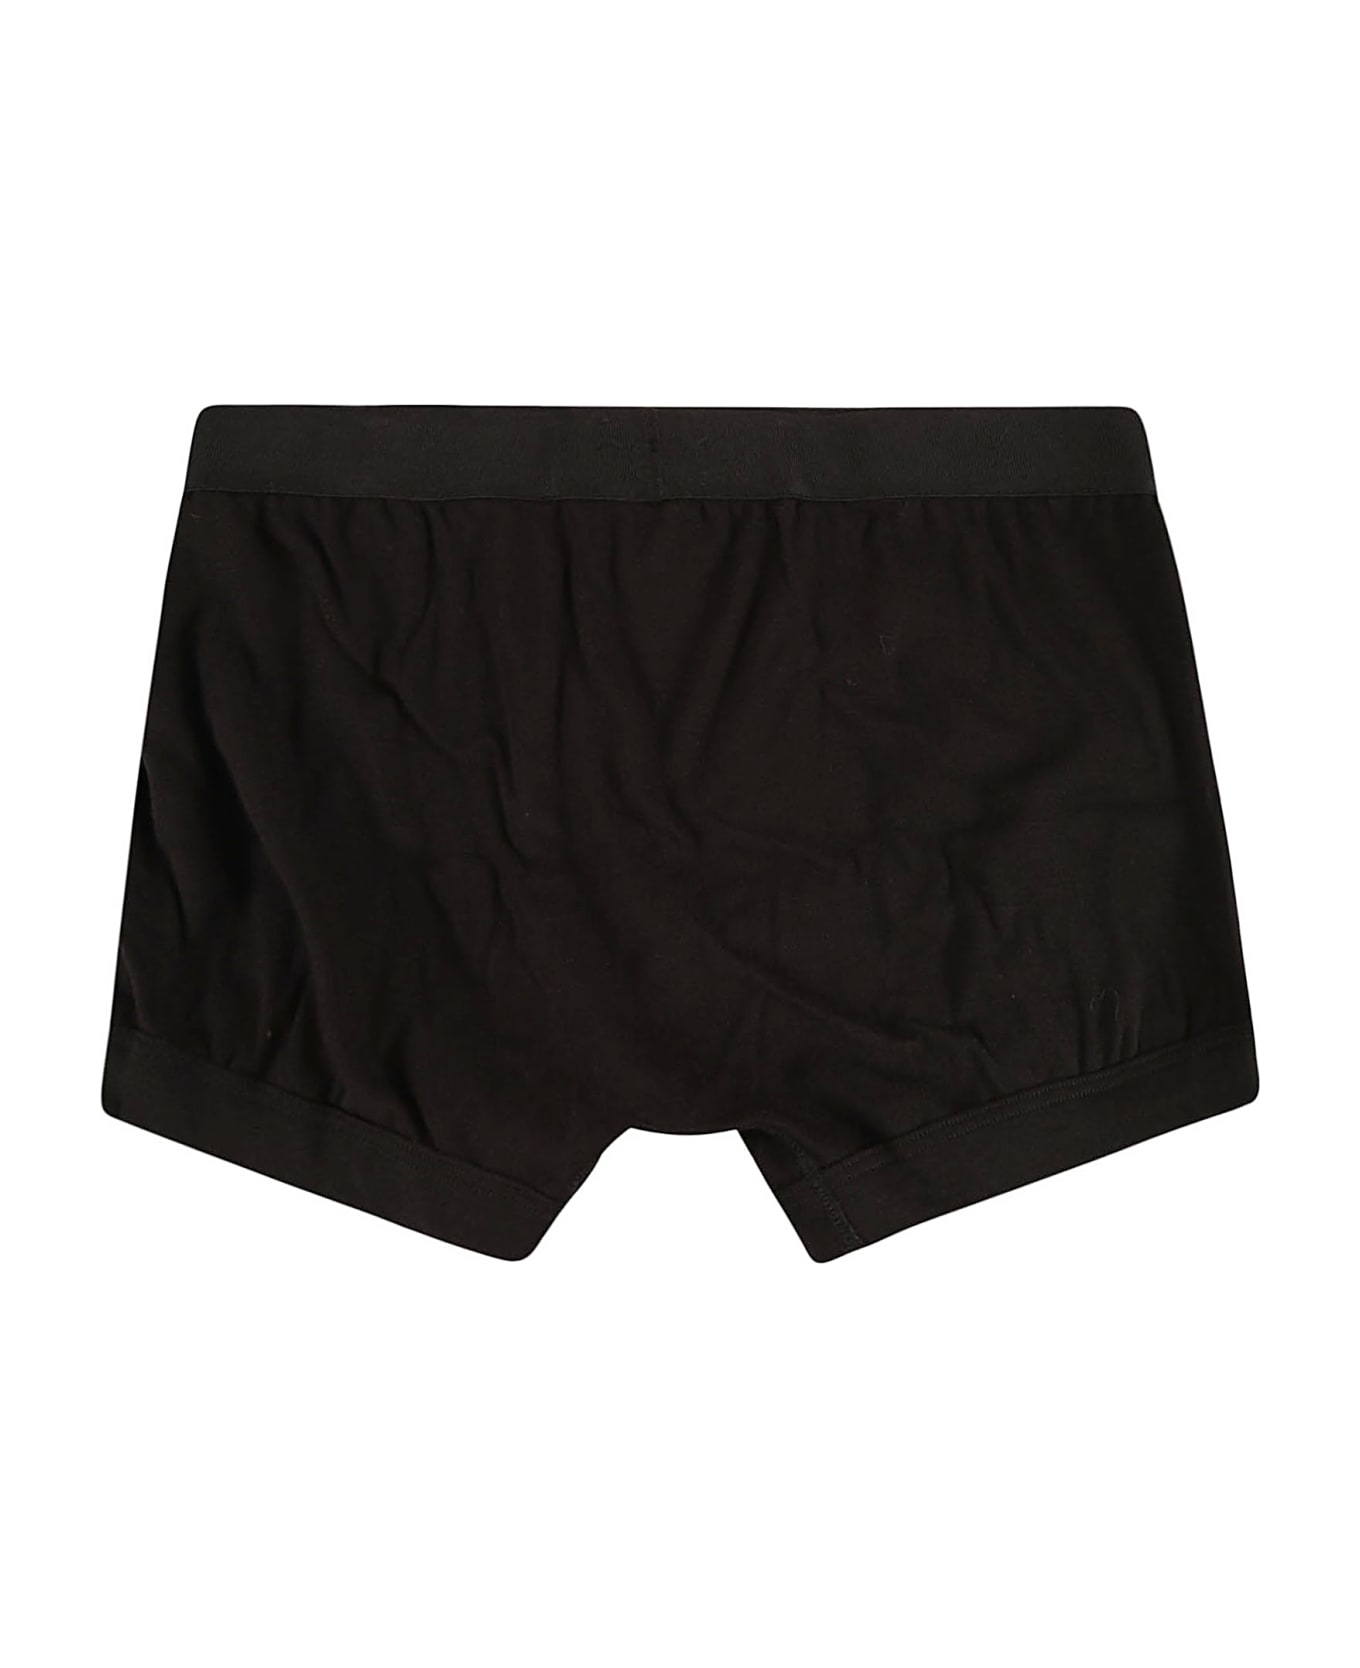 Tom Ford Logo Waist Plain Boxer Shorts - Black ショーツ